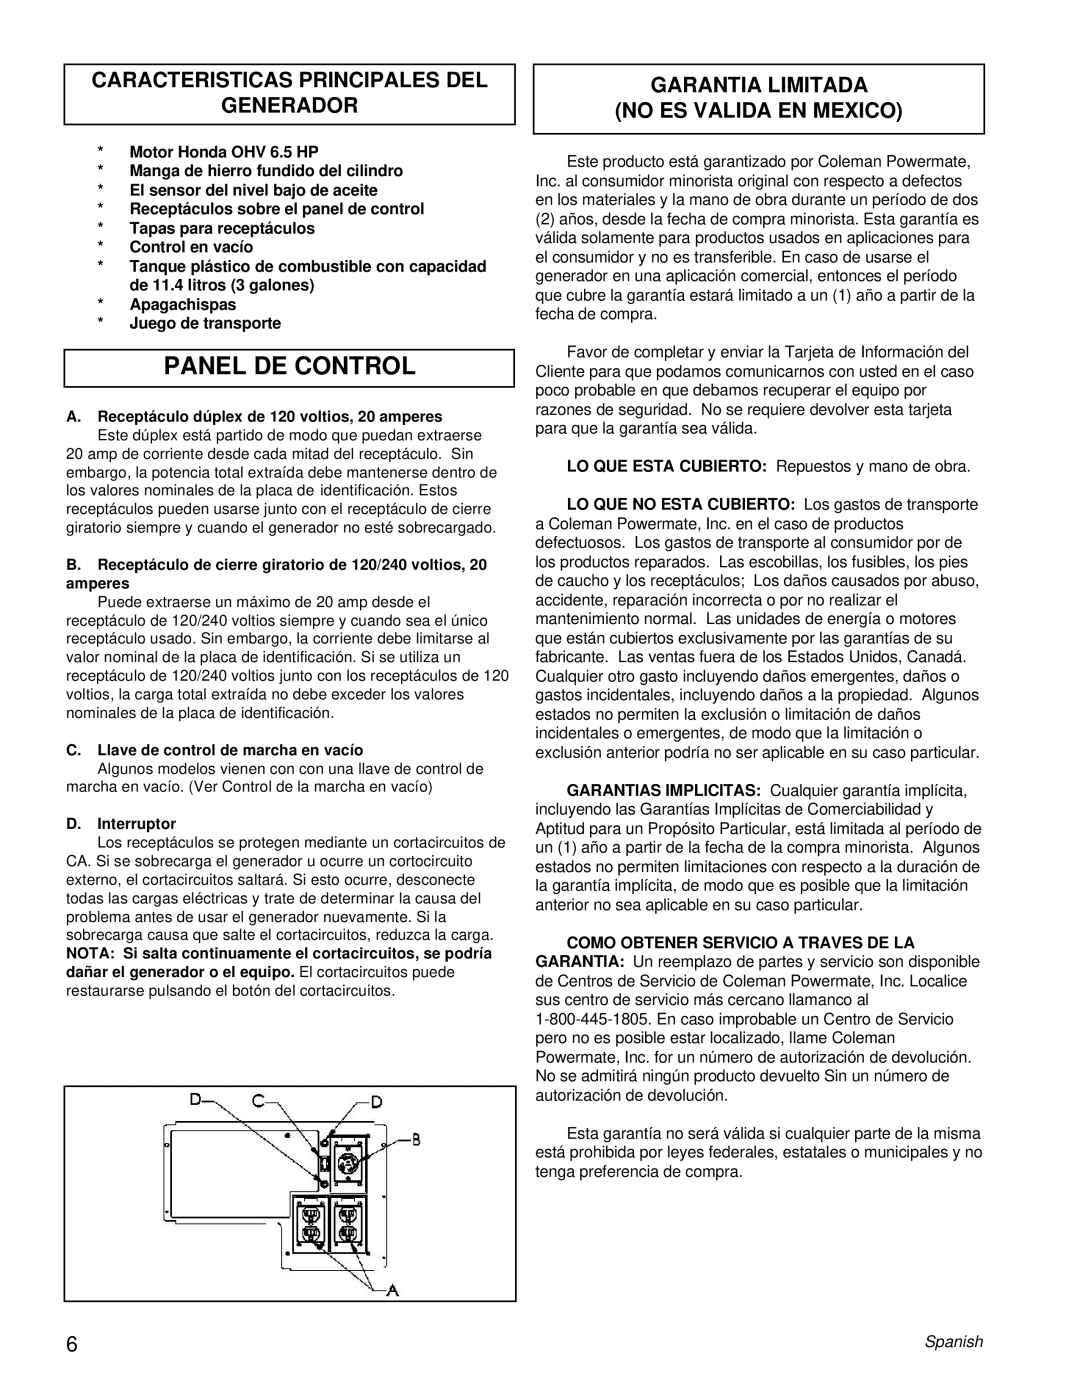 Powermate PM0463300 Panel De Control, Caracteristicas Principales Del Generador, Garantia Limitada No Es Valida En Mexico 